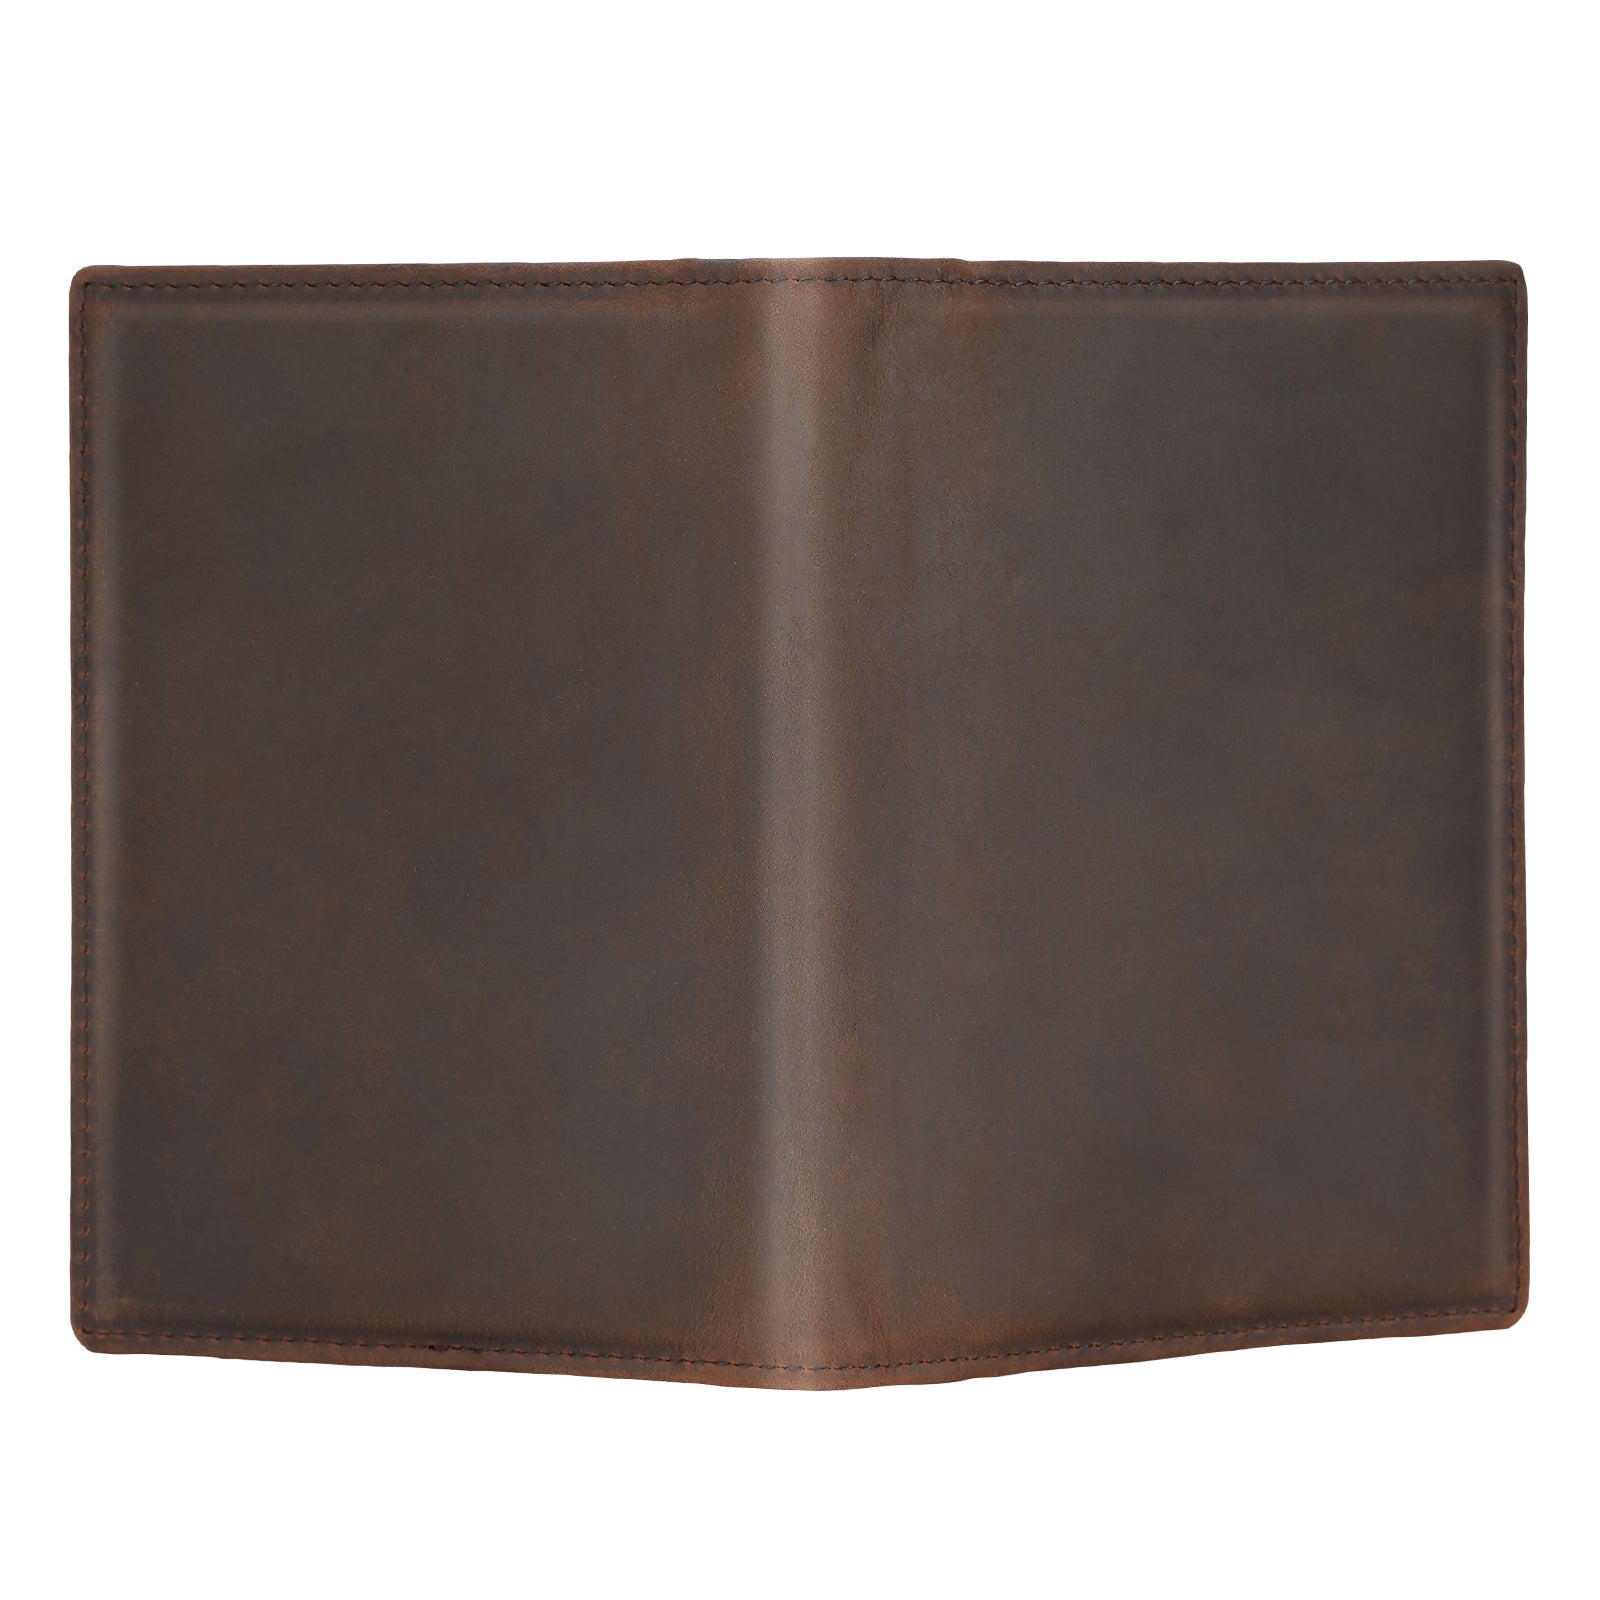 Polare RFID Blocking Leather Passport Holder Travel Bifold Wallet (Dark Brown,Back)